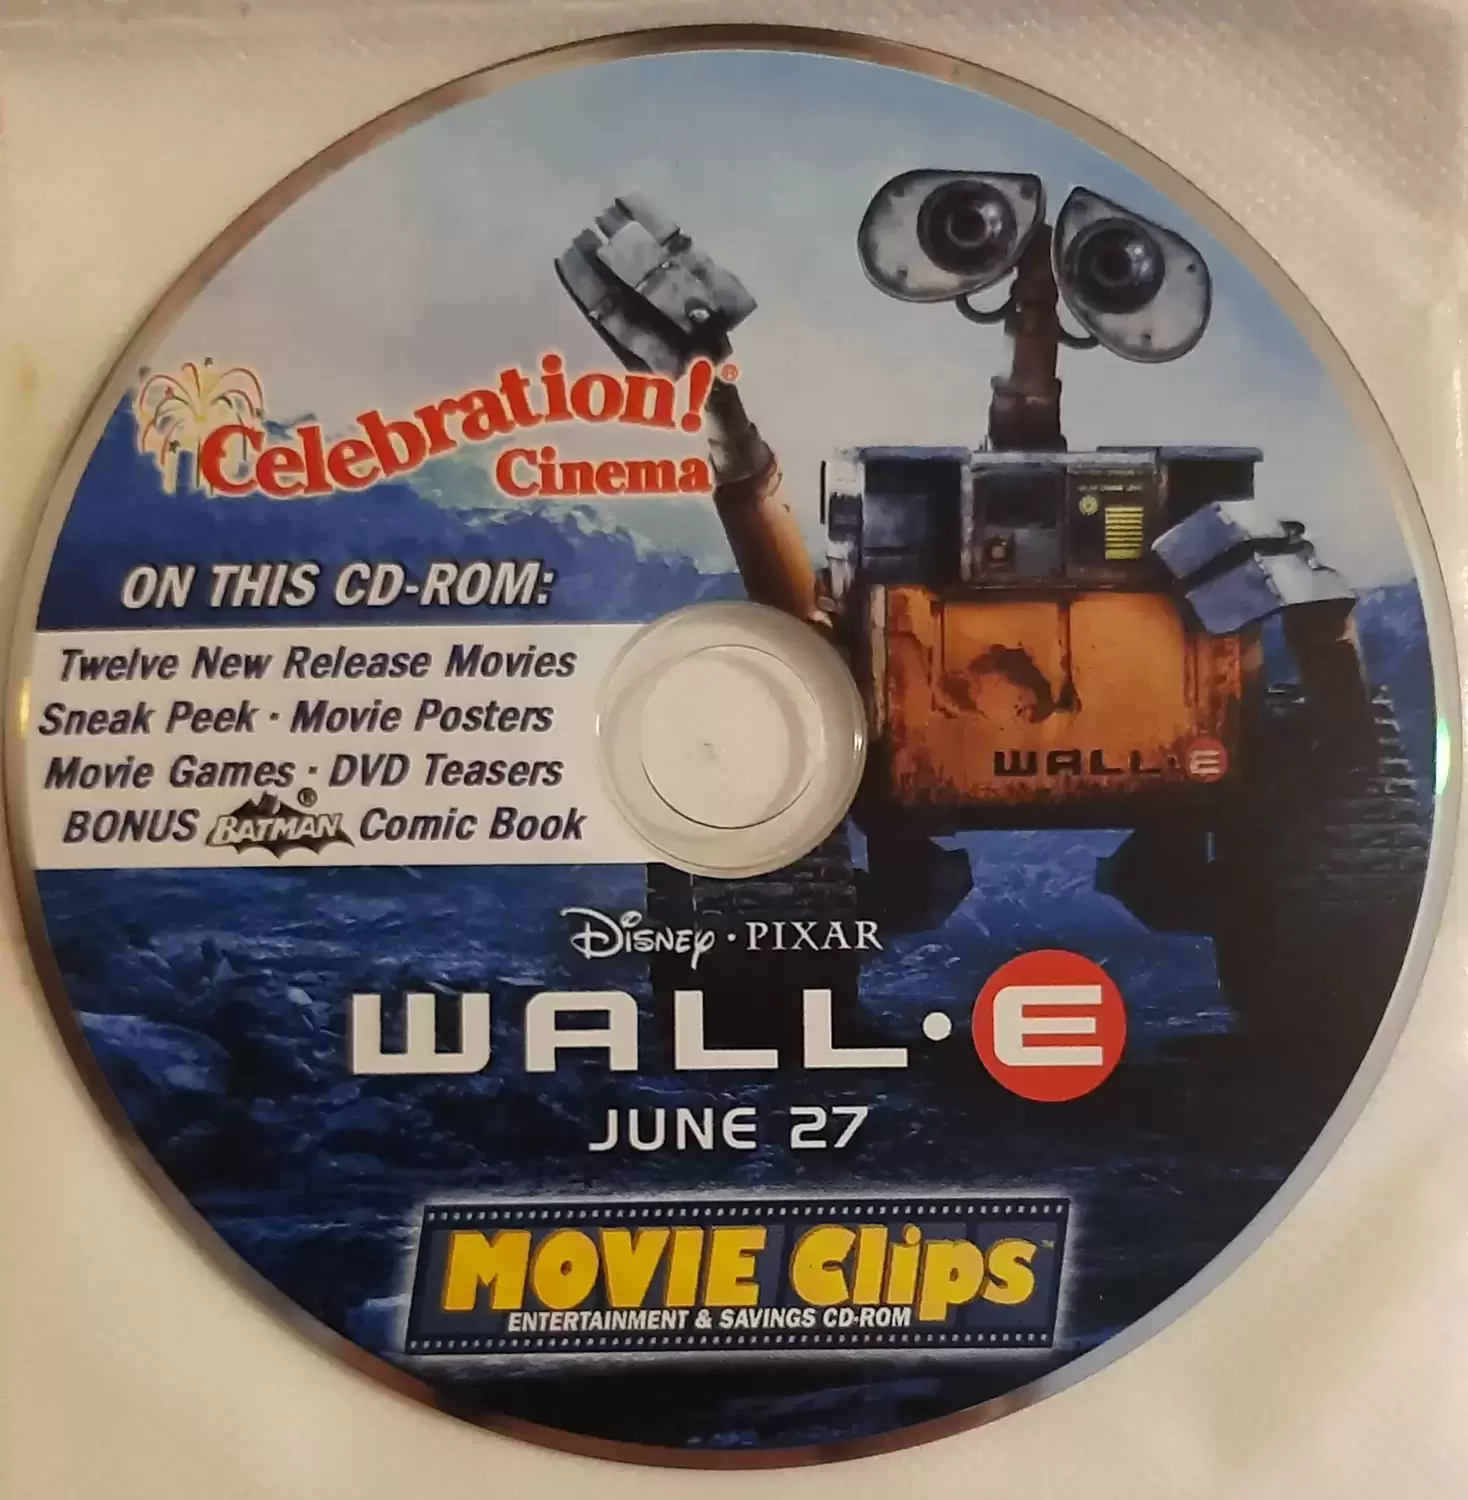 Les grands classiques de Disney en DVD - WALL-E - Celebration Cinema Movie Clips